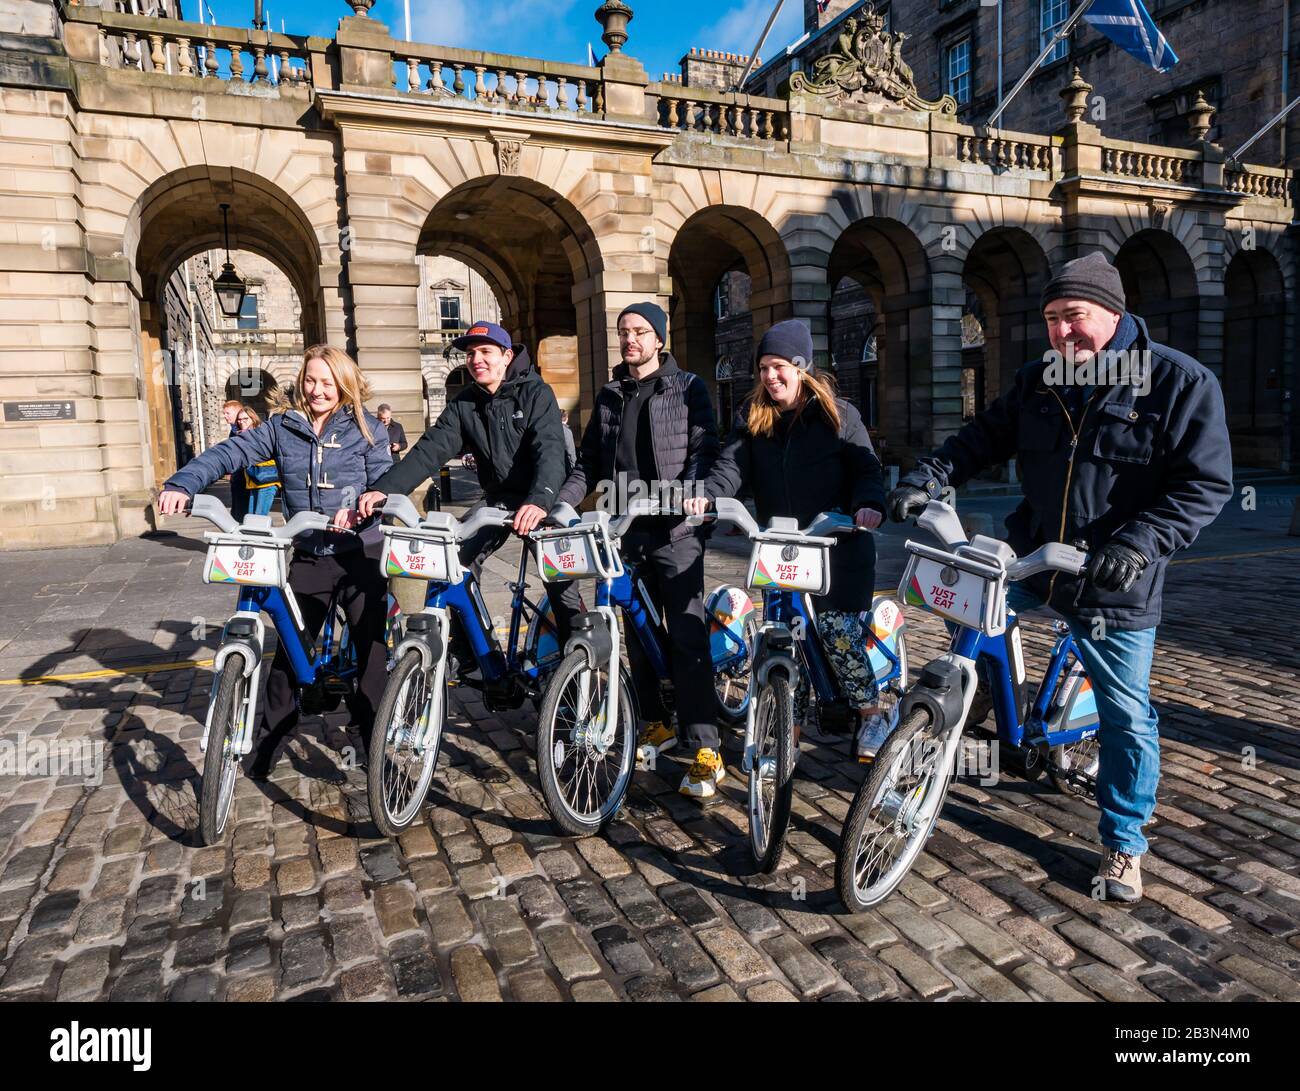 Lancement de nouvelles motos électriques par Just Eat Cycles, City Chambers, Royal Mile, Édimbourg, Écosse, Royaume-Uni Banque D'Images